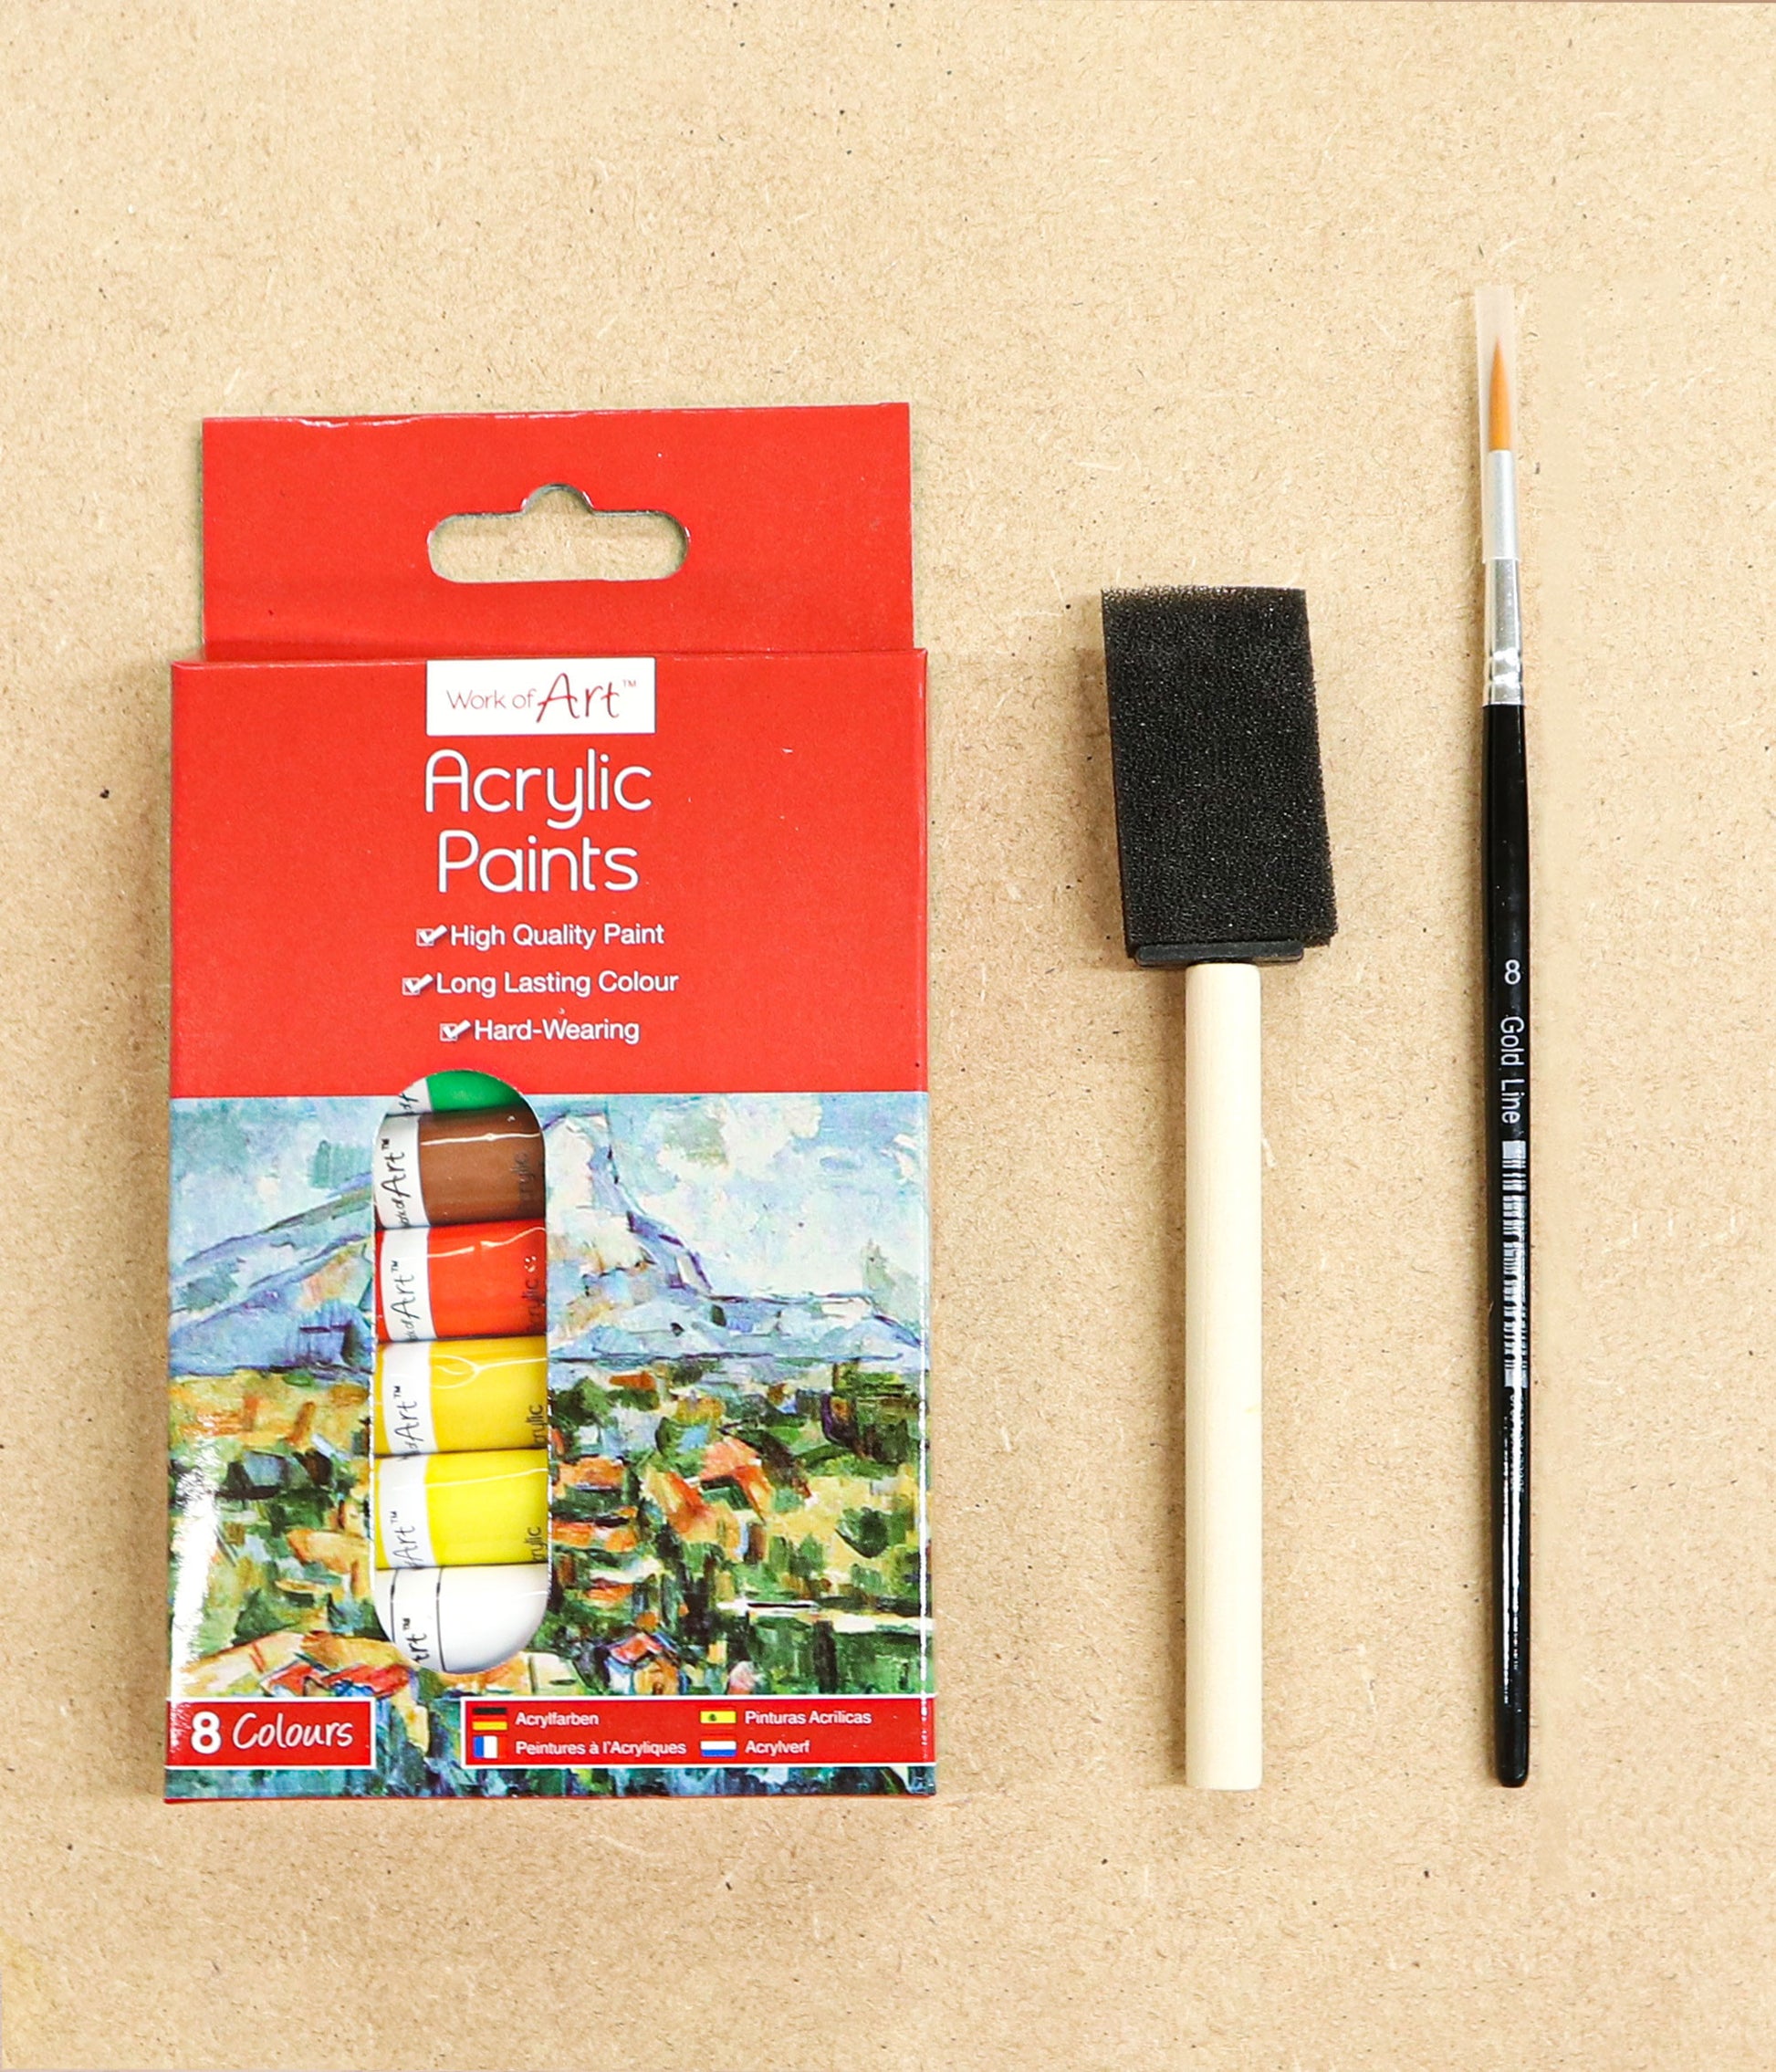 32 PC FolkArt Acrylic Paint & Brush Kit